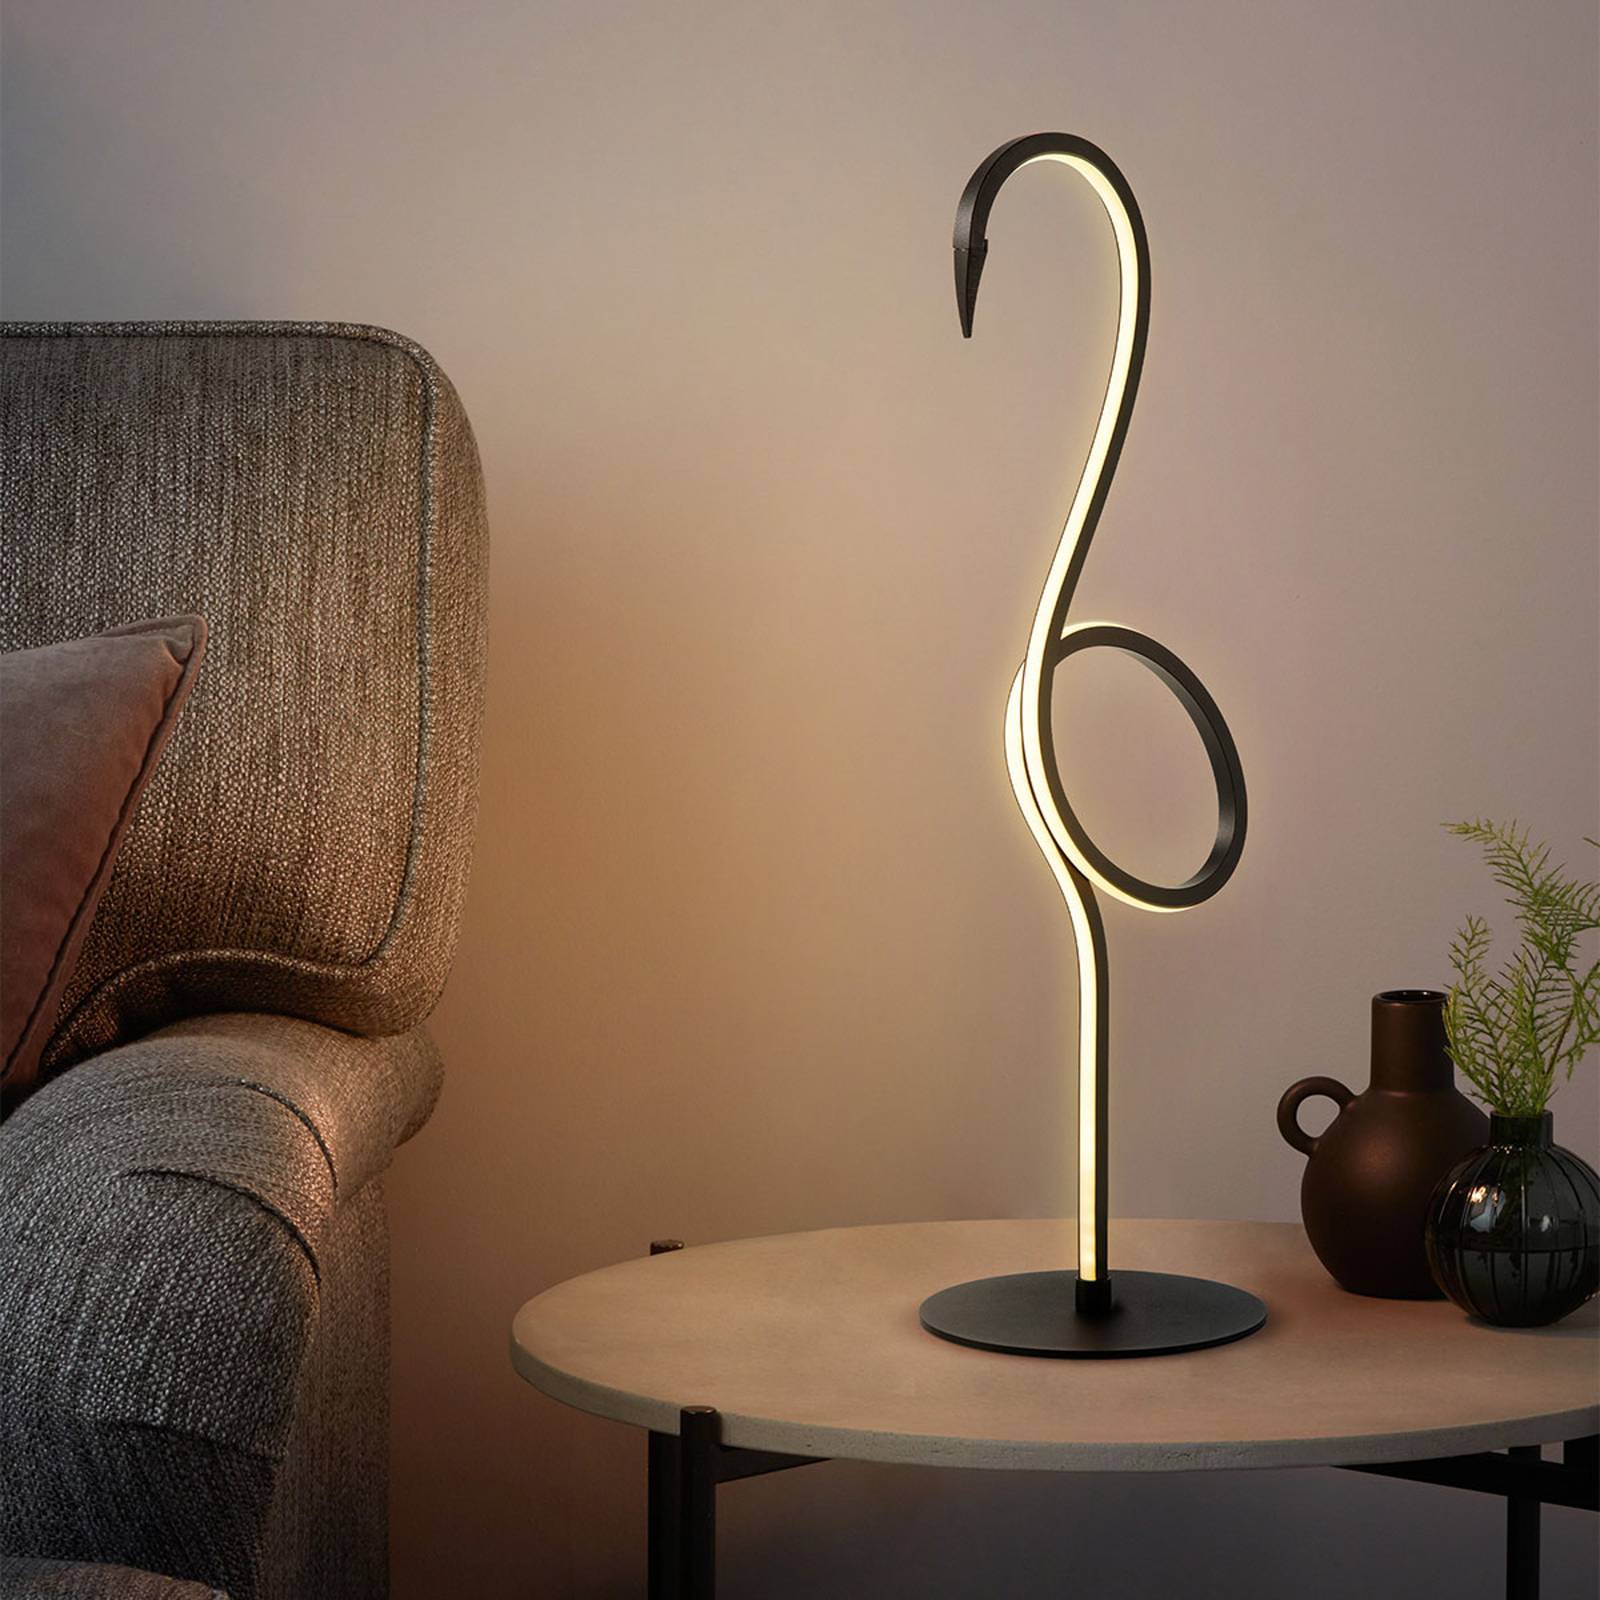 Flamingo LED-es asztali lámpa, fekete, fém, 50 cm magas